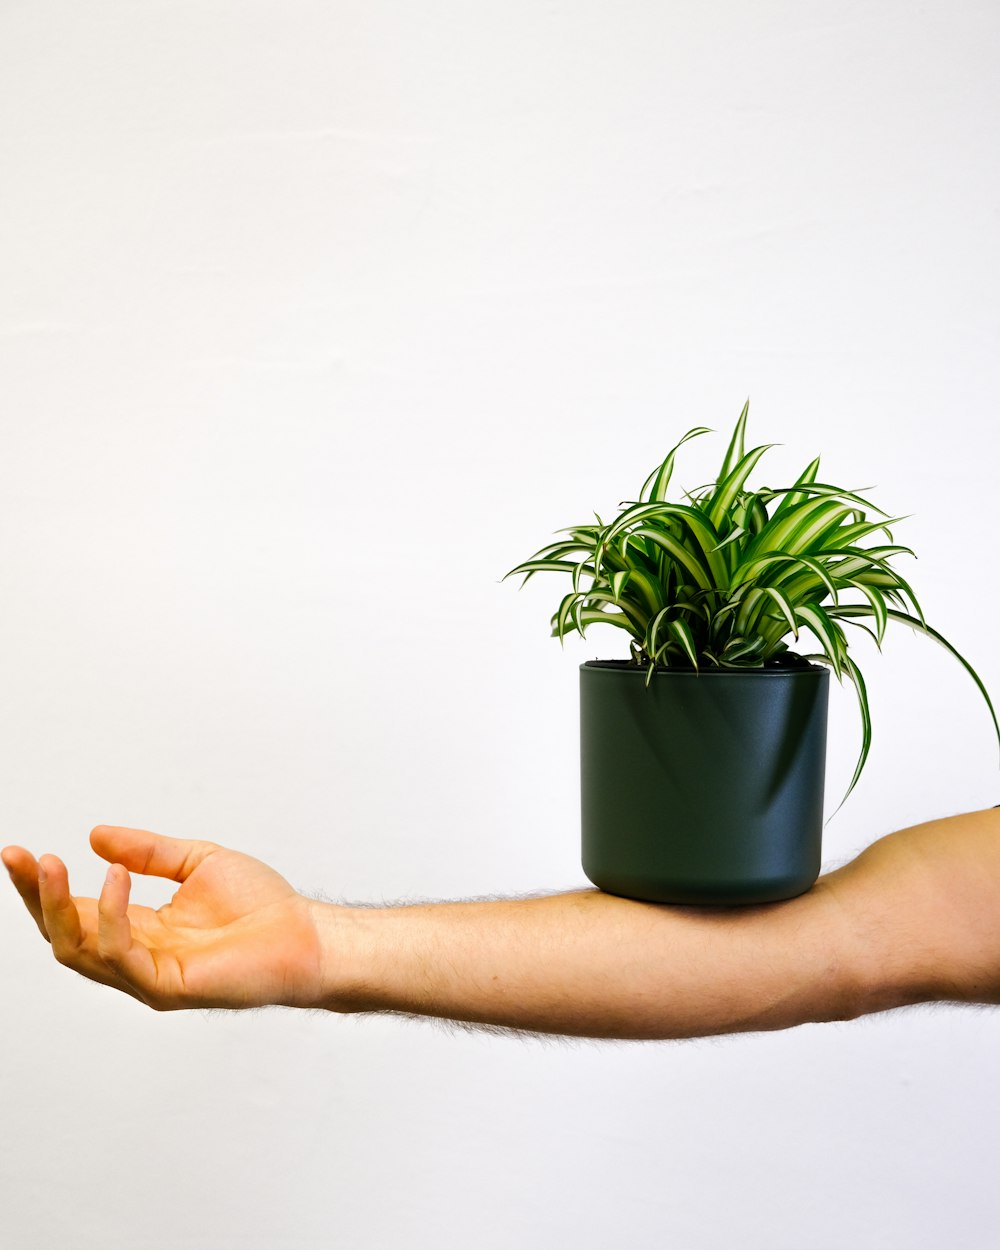 Una mano sosteniendo una planta en maceta sobre un fondo blanco